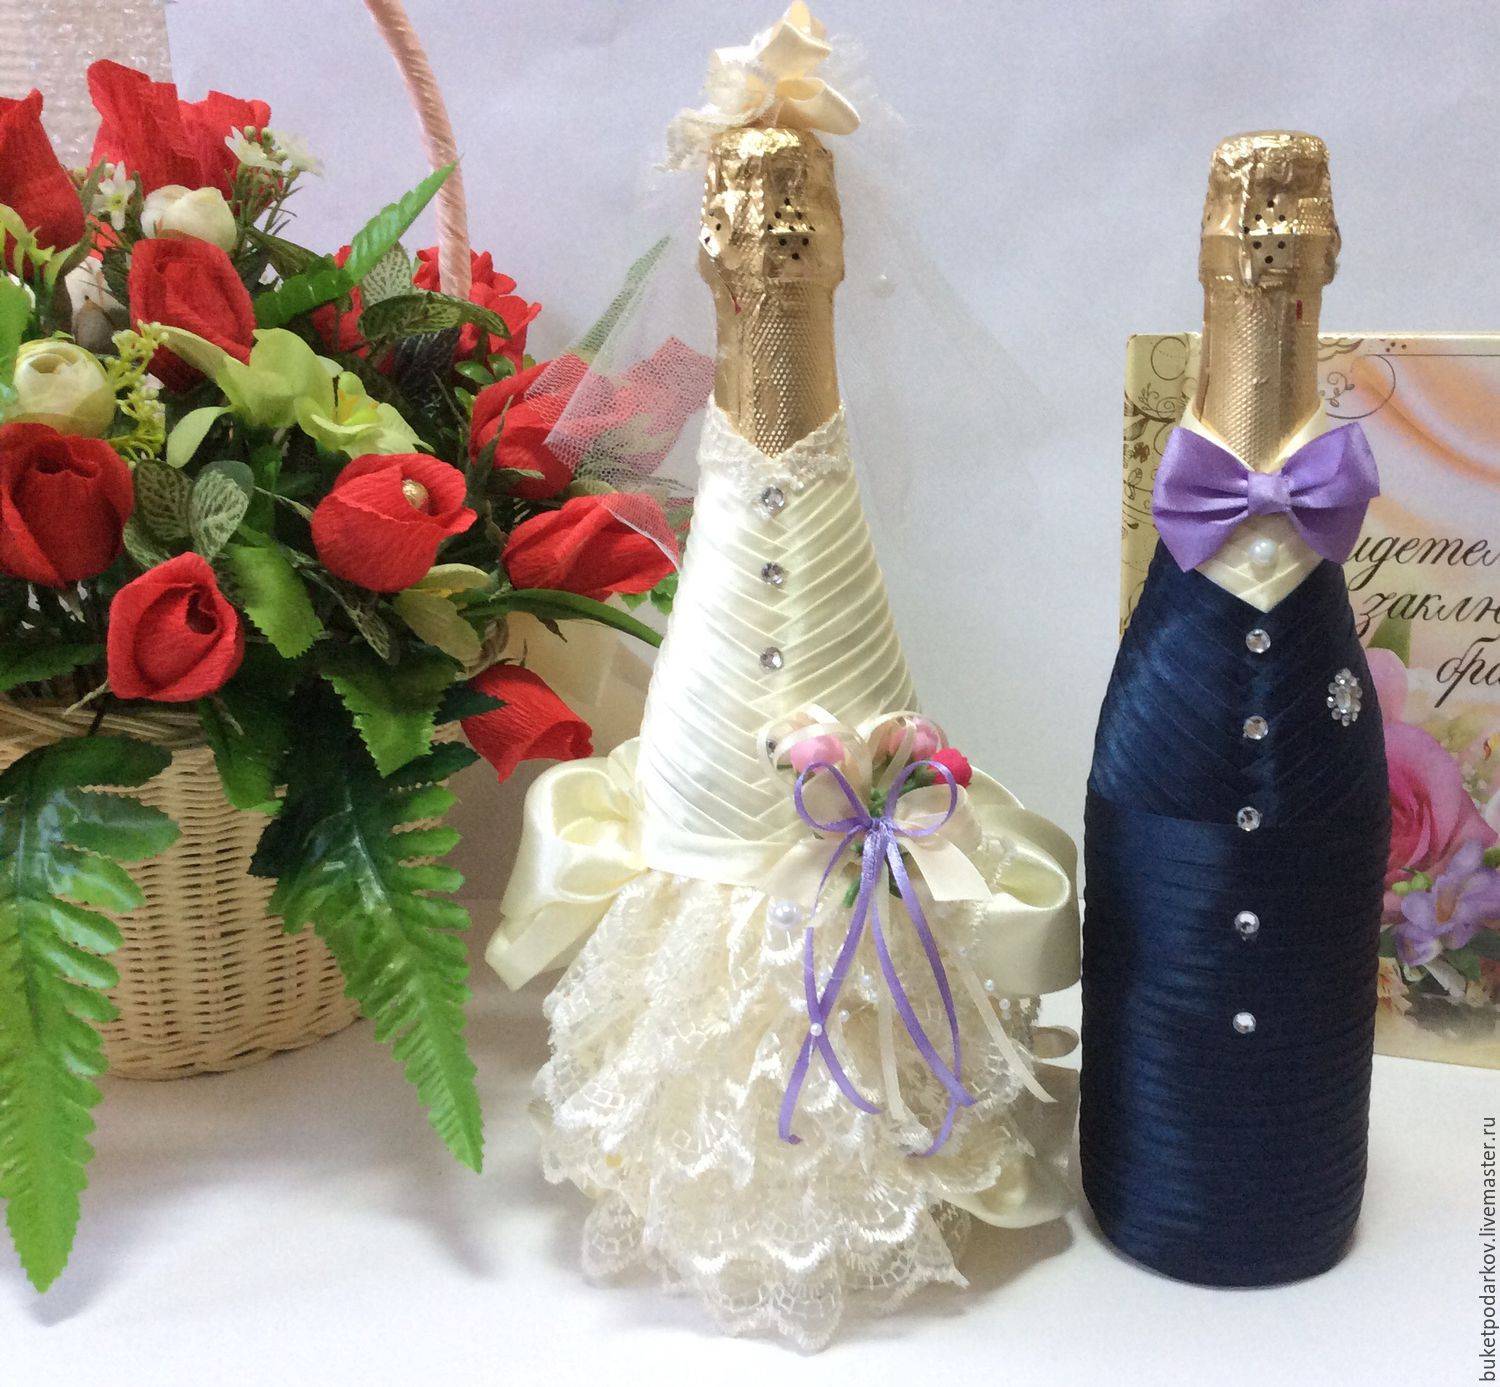 ᐉ оформление свадебных бутылок шампанского своими руками. как украсить шампанское на свадьбу - 41svadba.ru